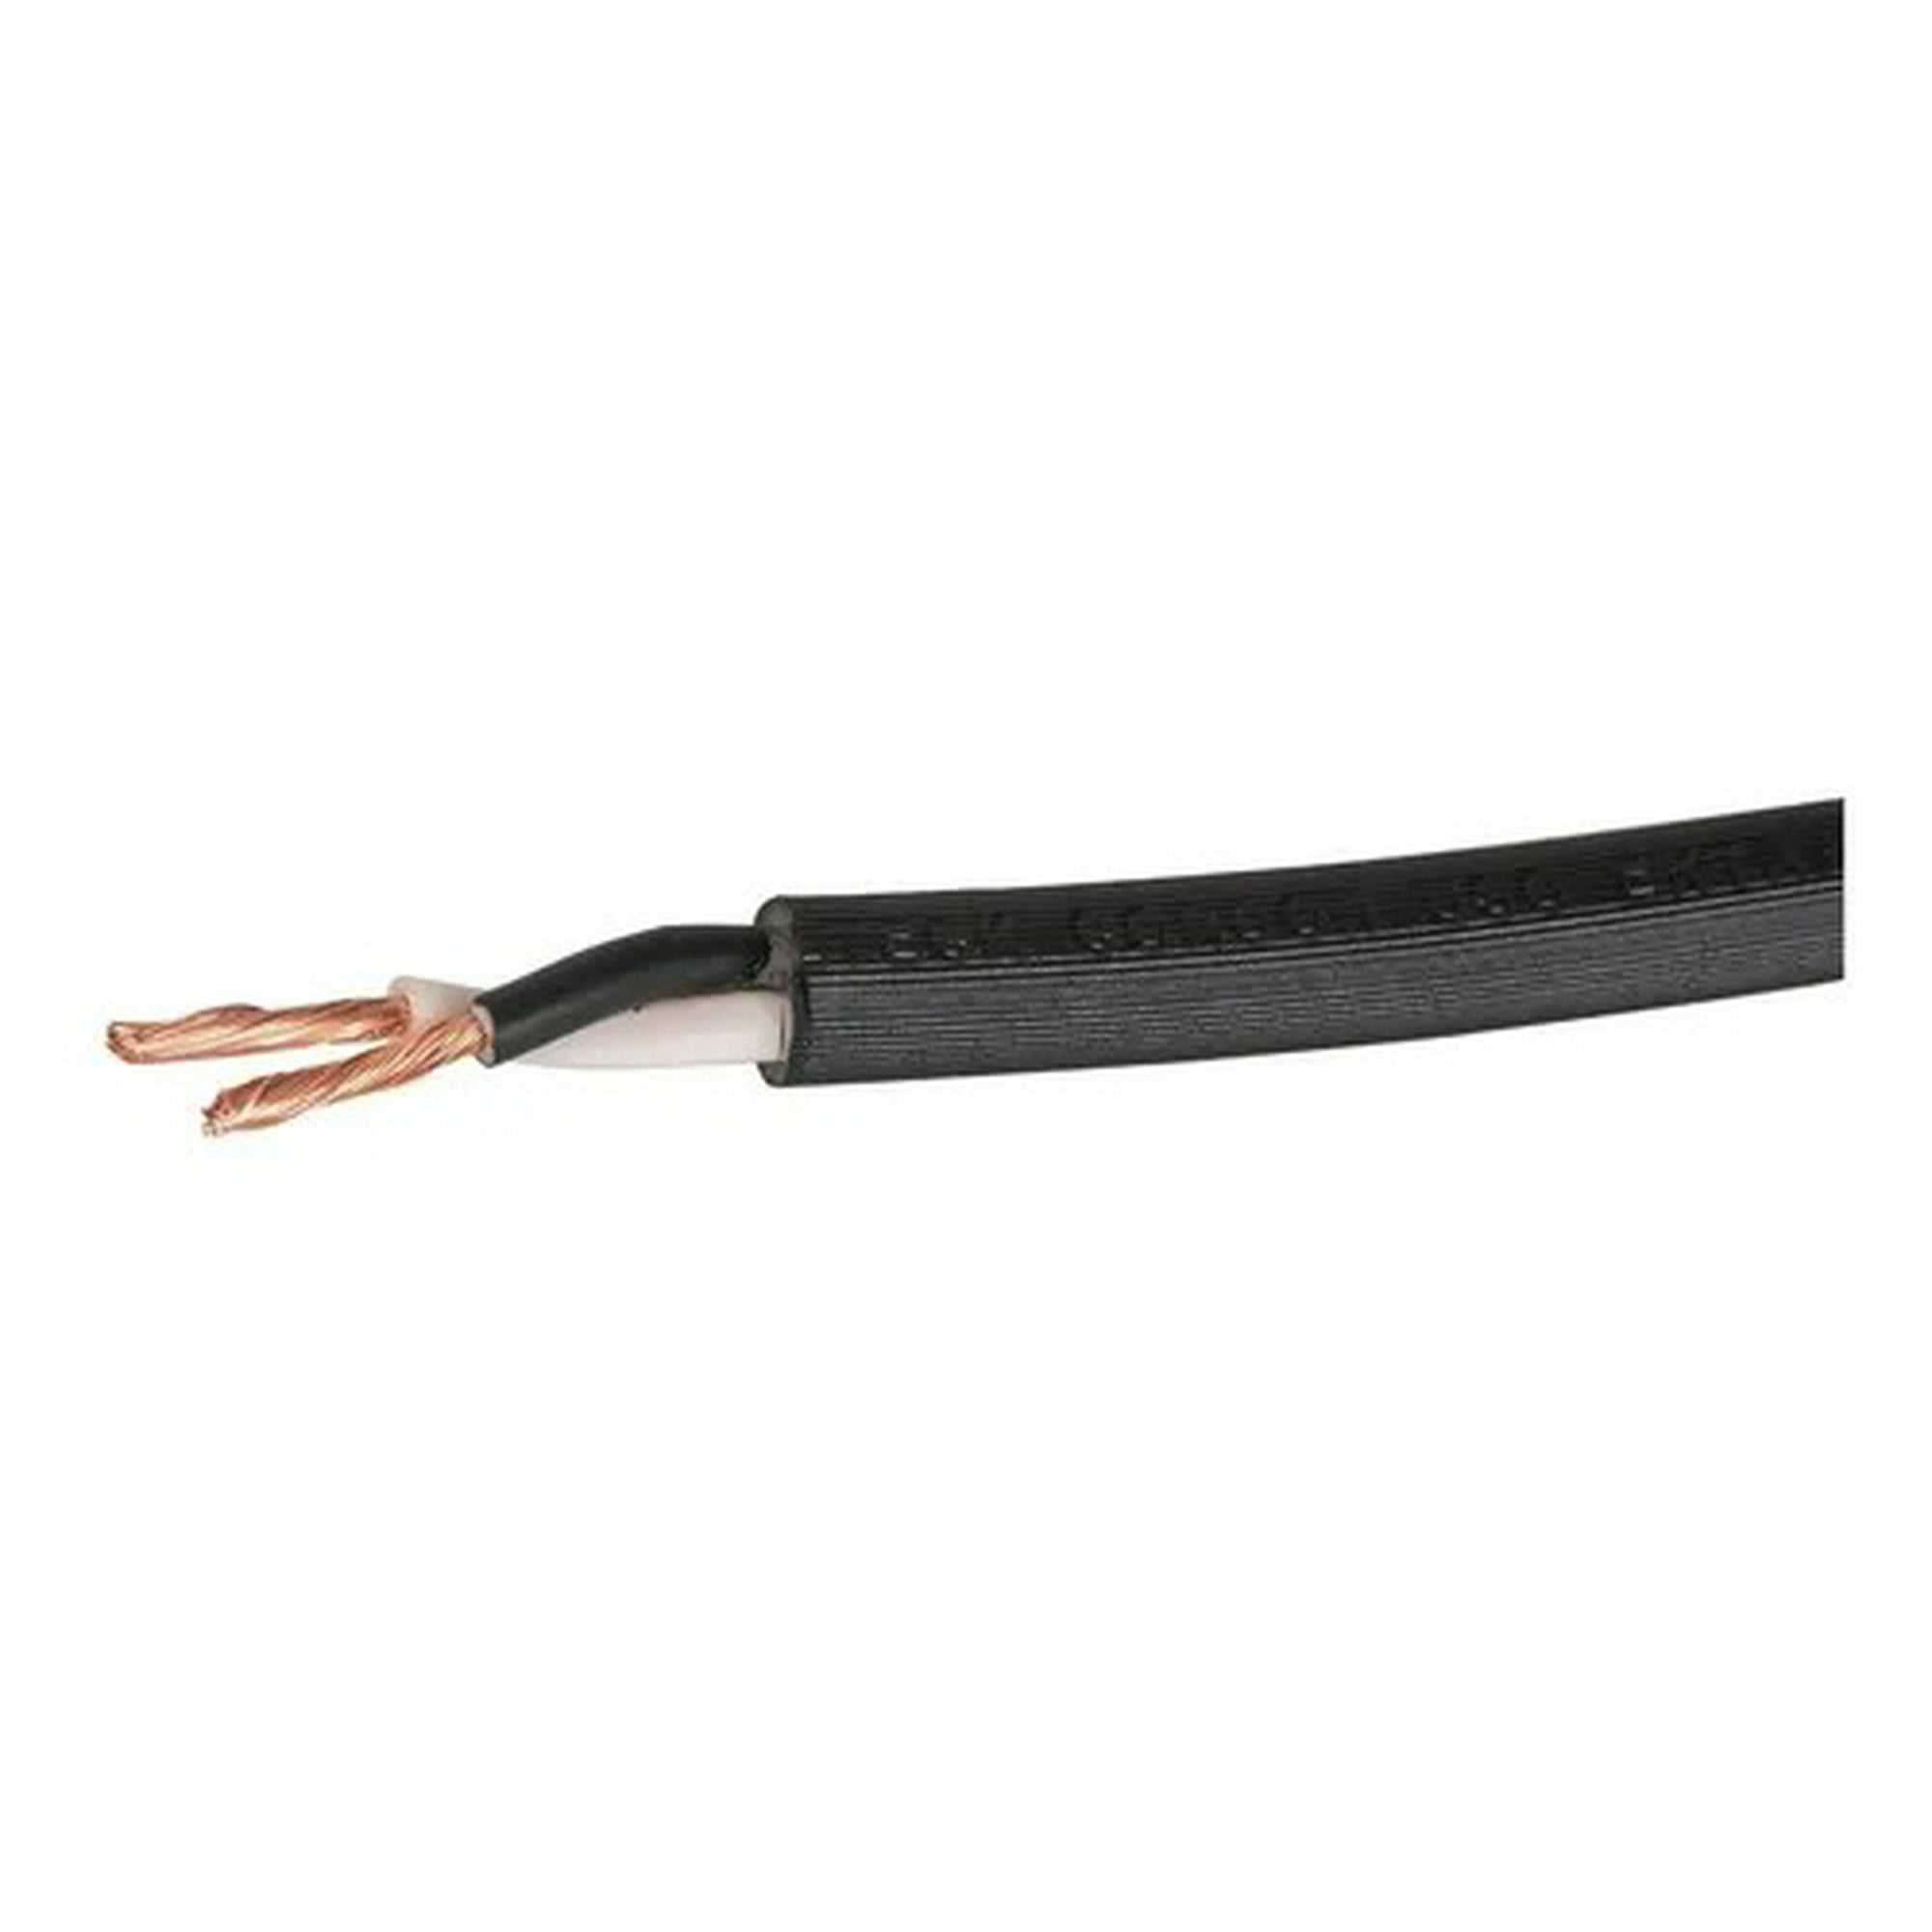 Cable para bocina CCA 14awg - 1 metro